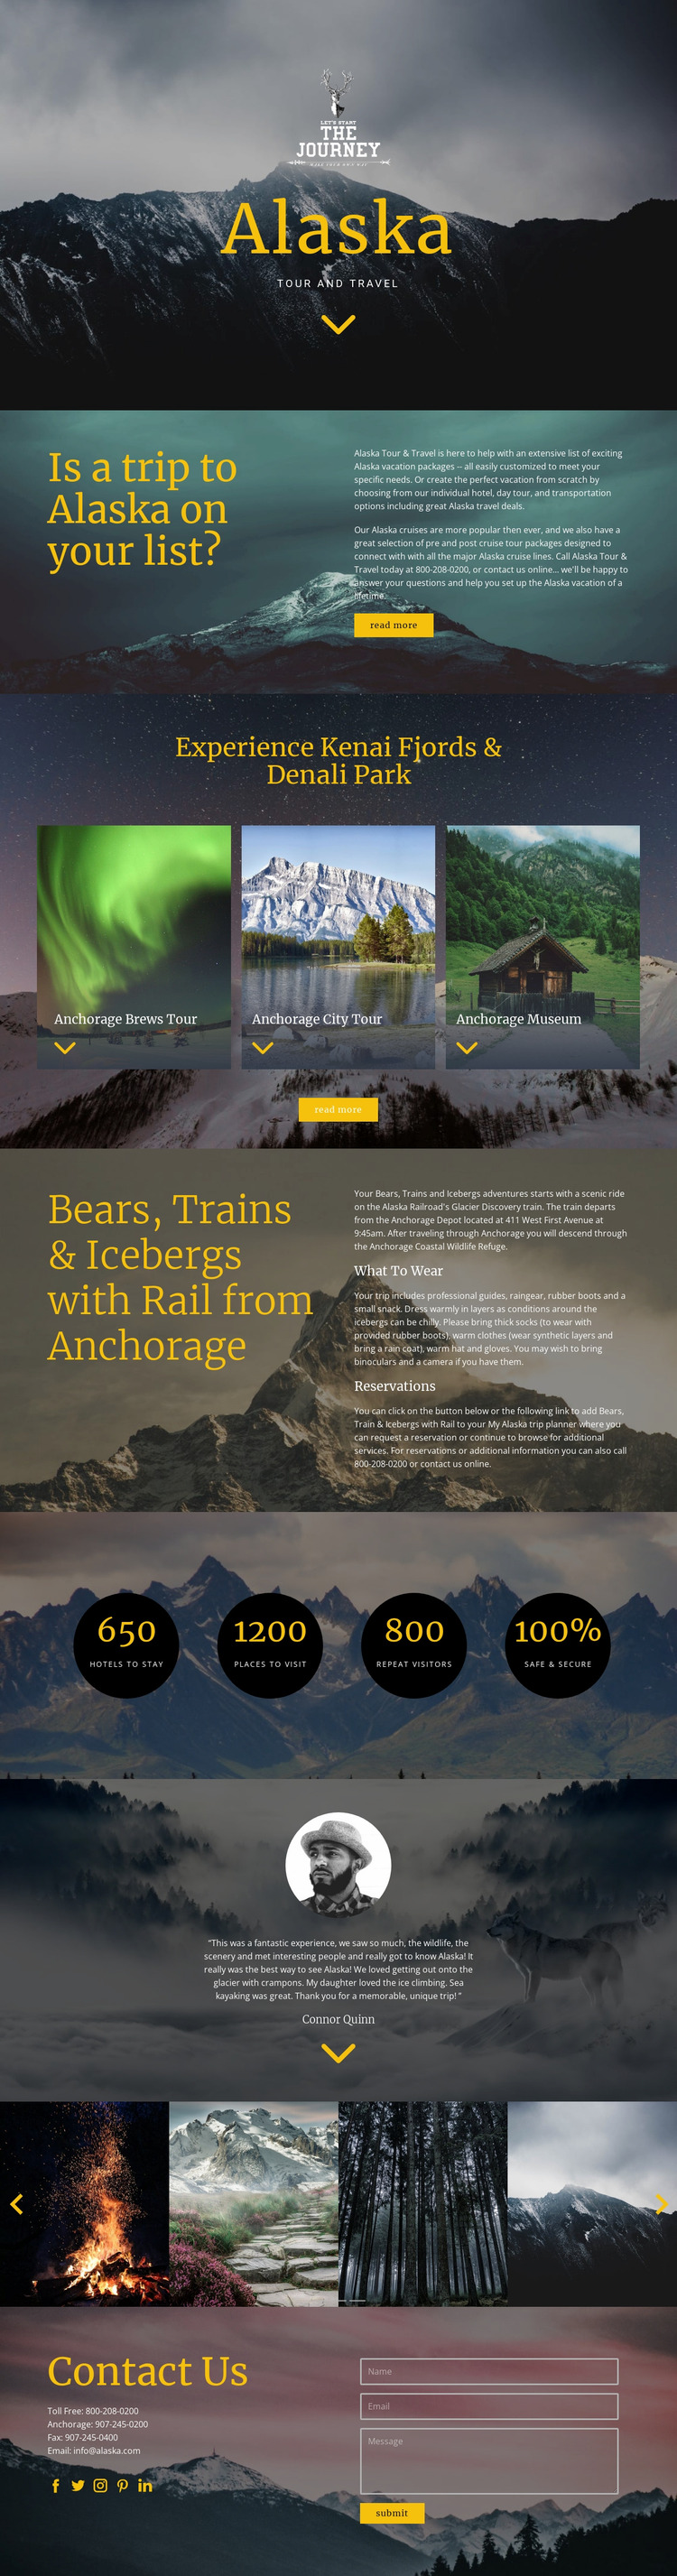 Alaska Travel Website Mockup